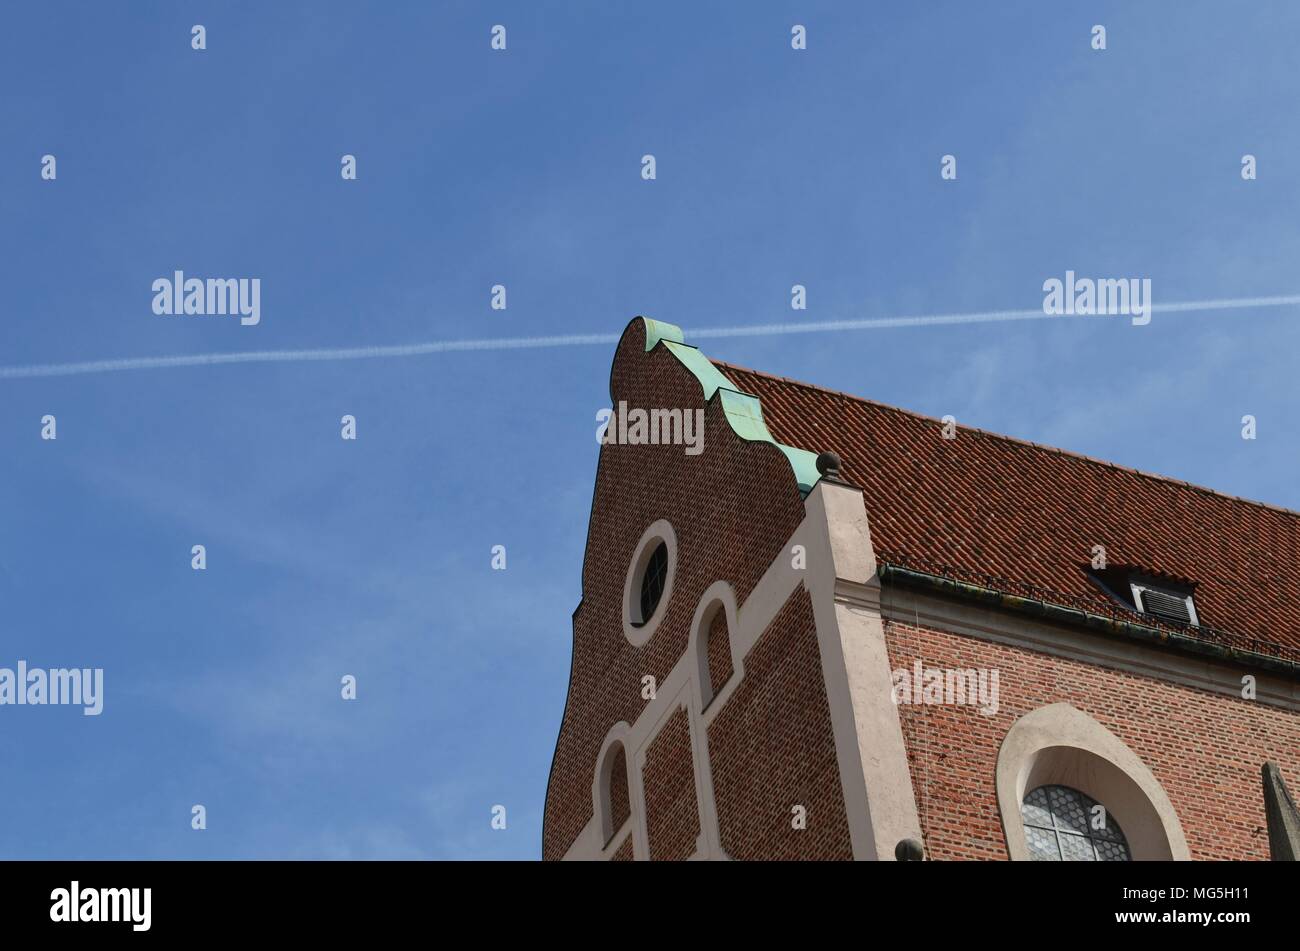 Historisches Gebäude mit roten Ziegeln und ein kondensstreifen eines Flugzeugs in den blauen Himmel geschossen in München in Deutschland Stockfoto